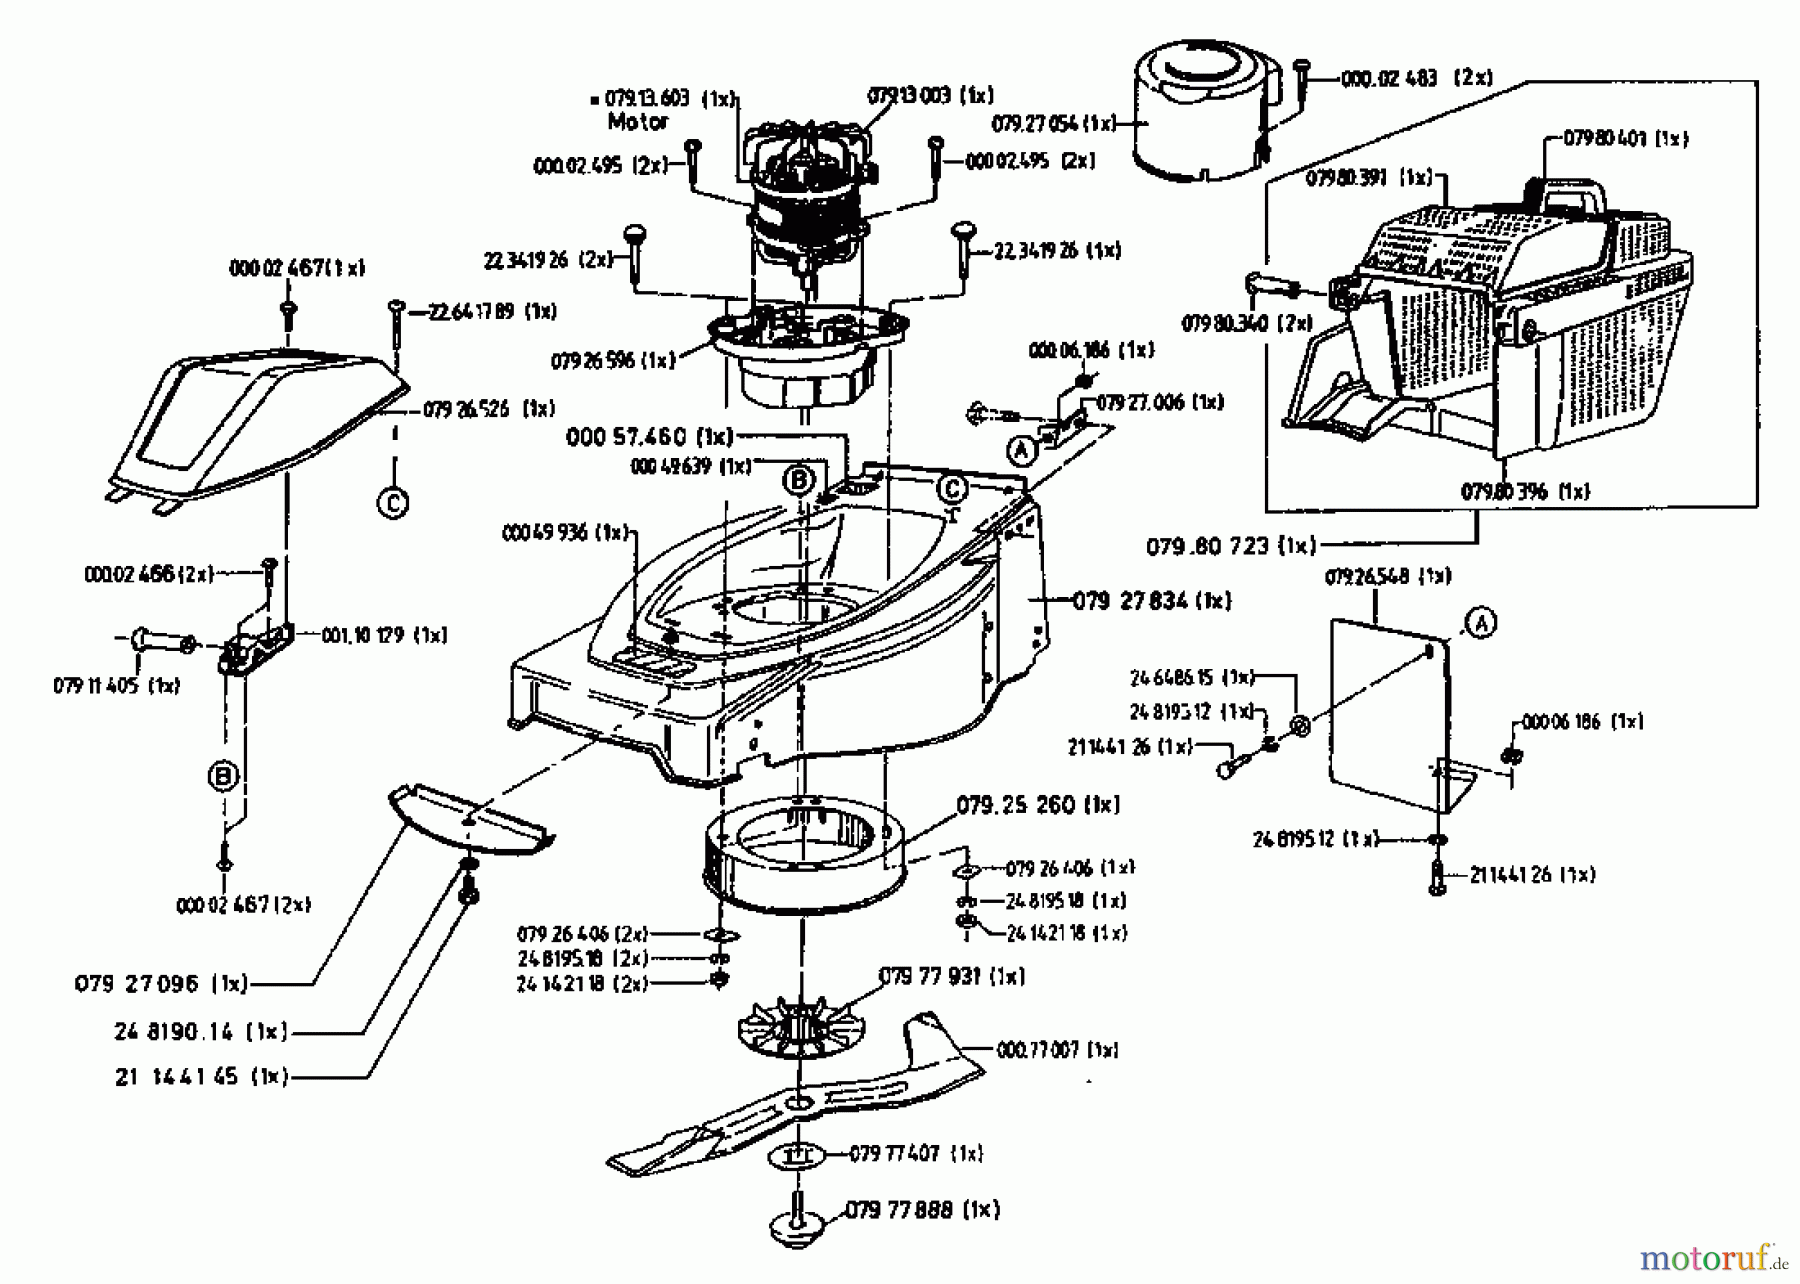  Gutbrod Tondeuse électrique HE 42 04030.07  (1996) Machine de base